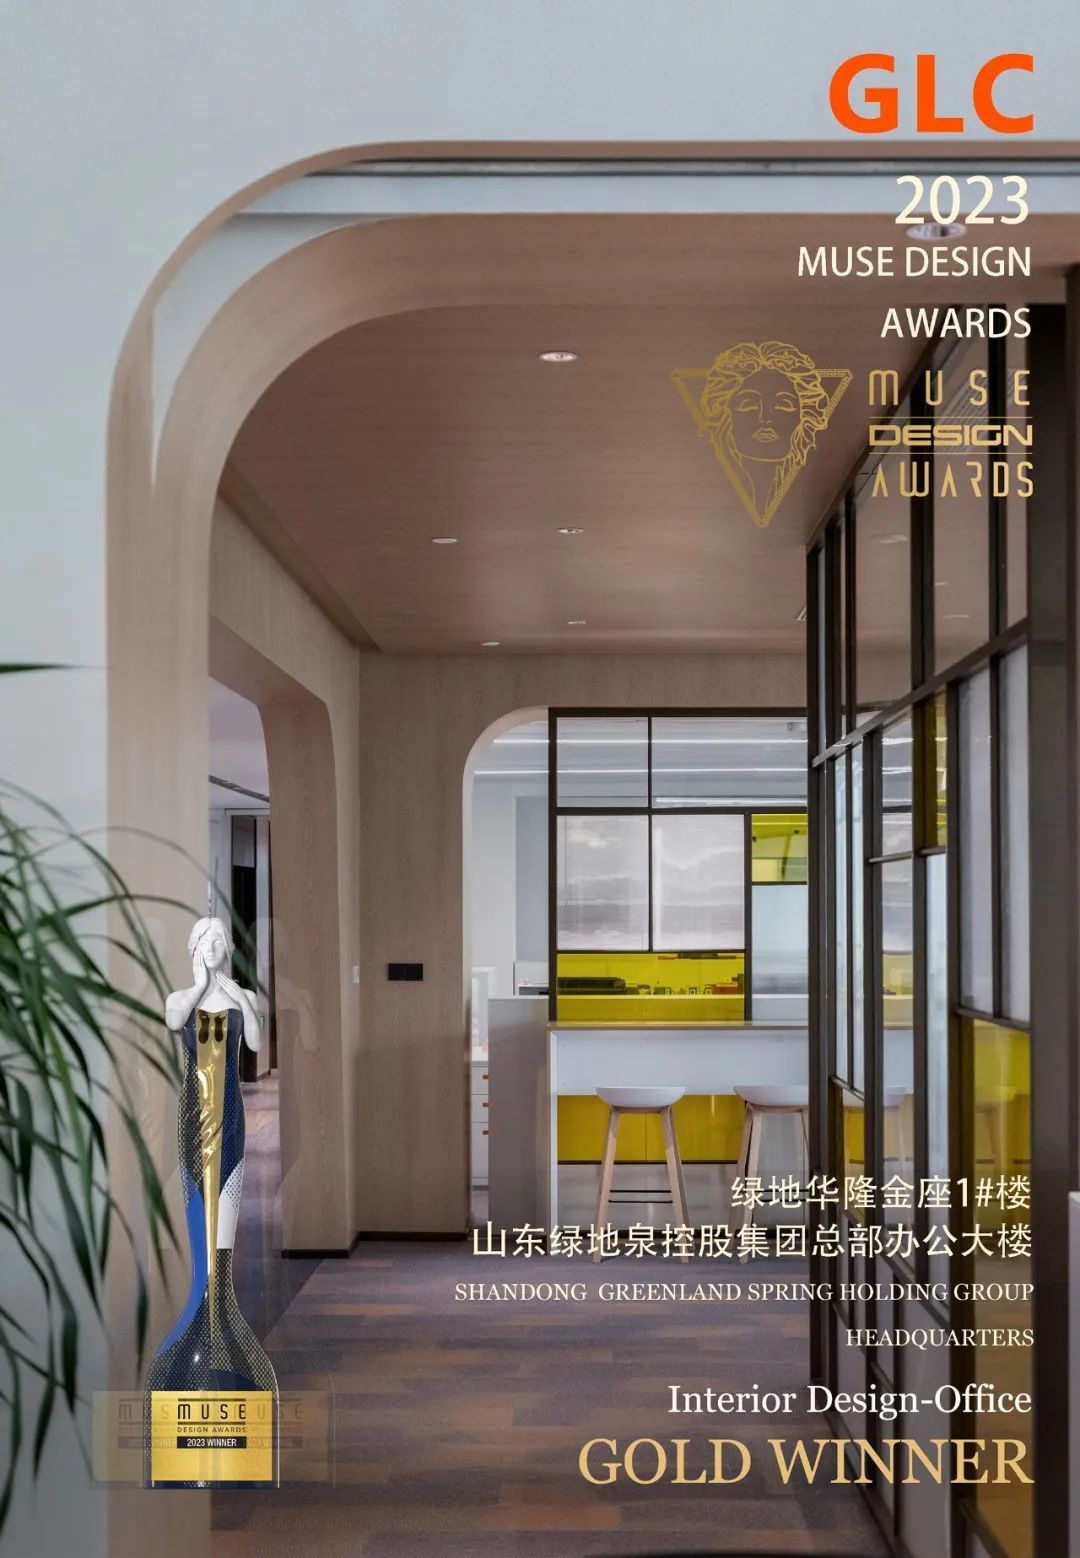 喜讯 | GLC项目-山东绿地泉控股集团总部办公楼荣获美国MUSE设计奖金奖